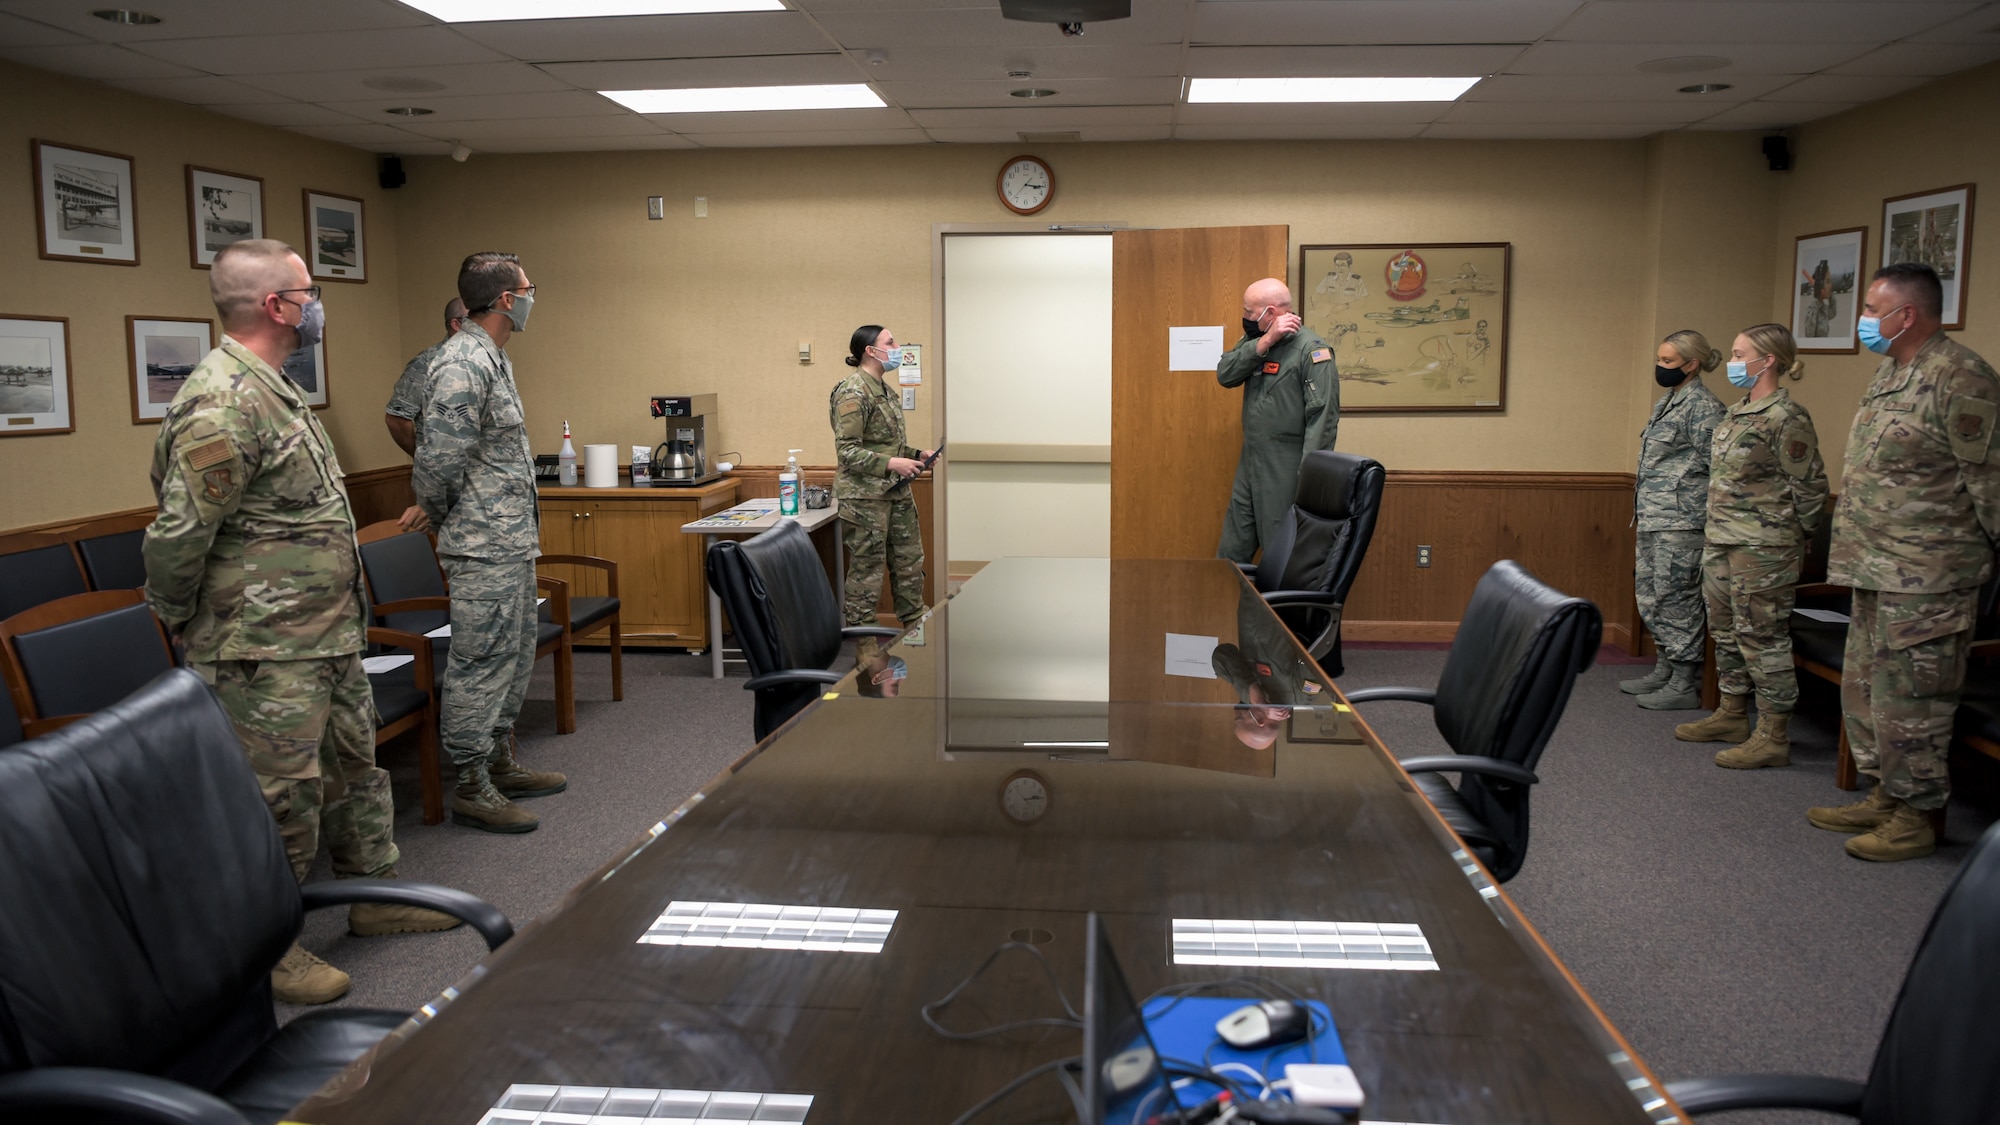 Airmen in meeting room.